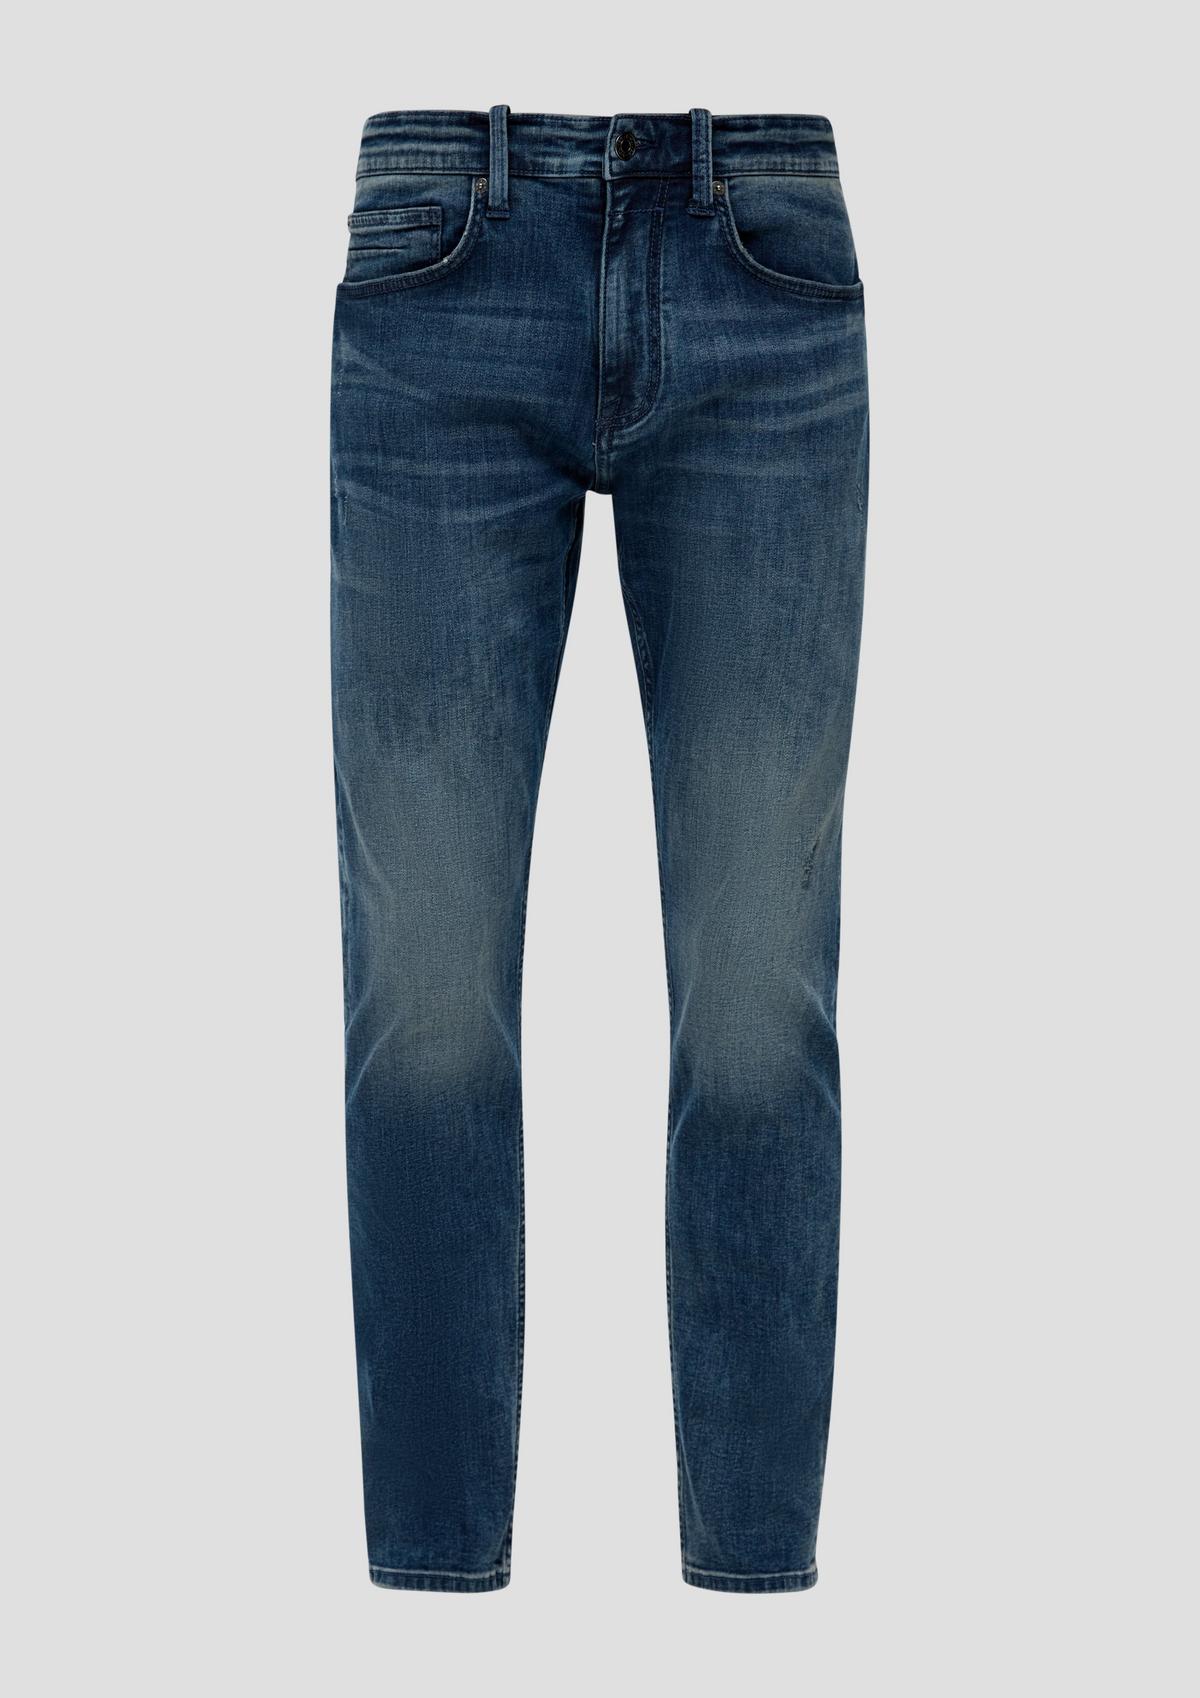 s.Oliver Jeans / regular fit / mid rise / tapered leg / 5-pocket-model